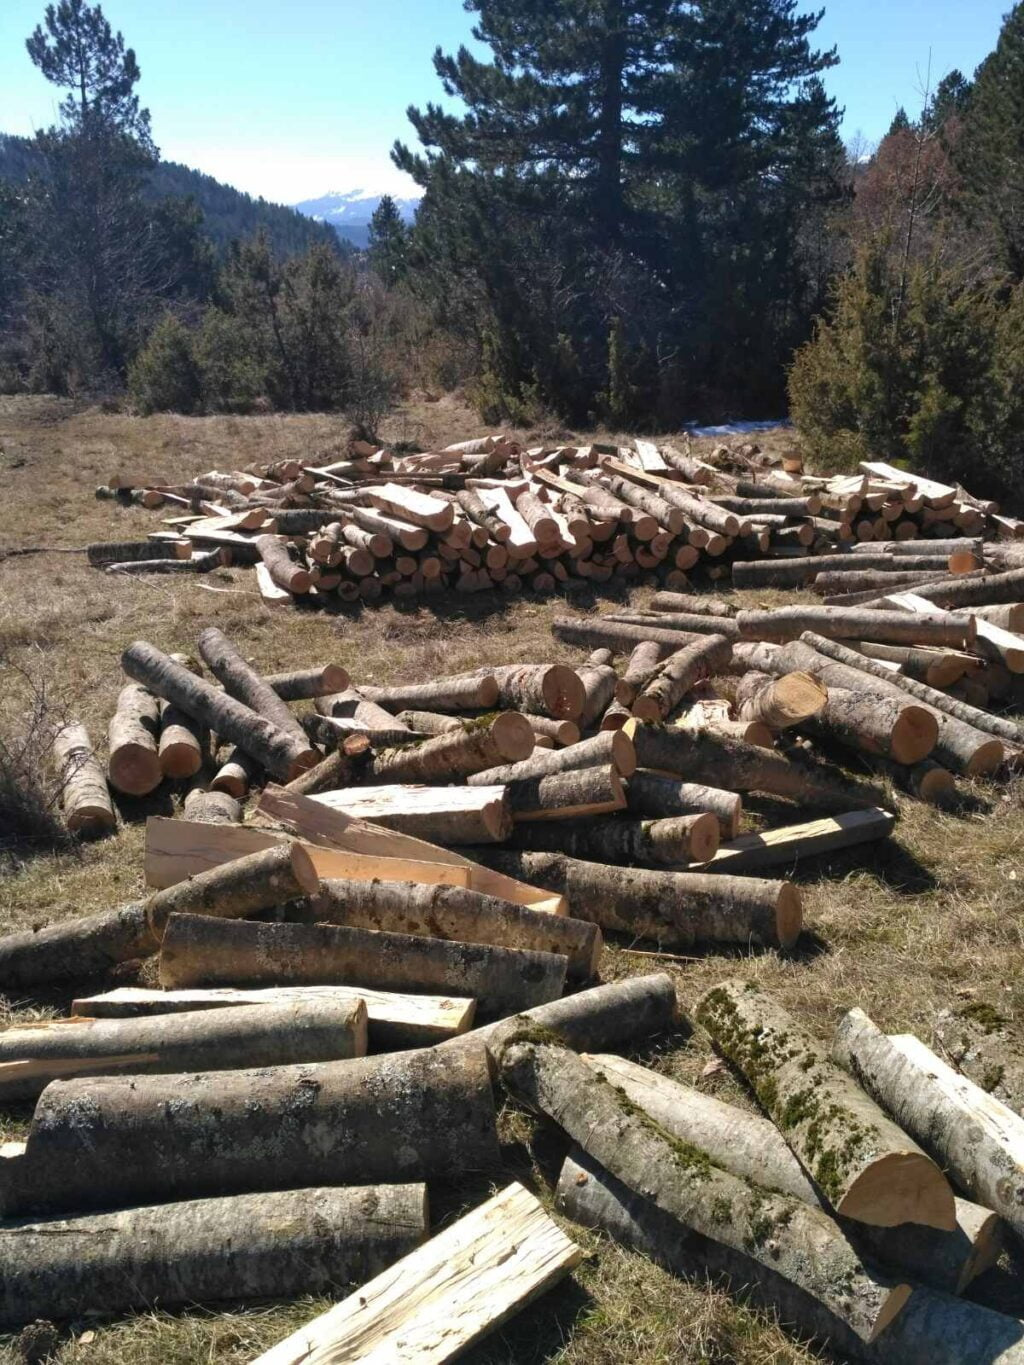 Συνελήφθη 25χρονος σε δασική περιοχή της Καστοριάς για παράβαση της δασικής νομοθεσίας